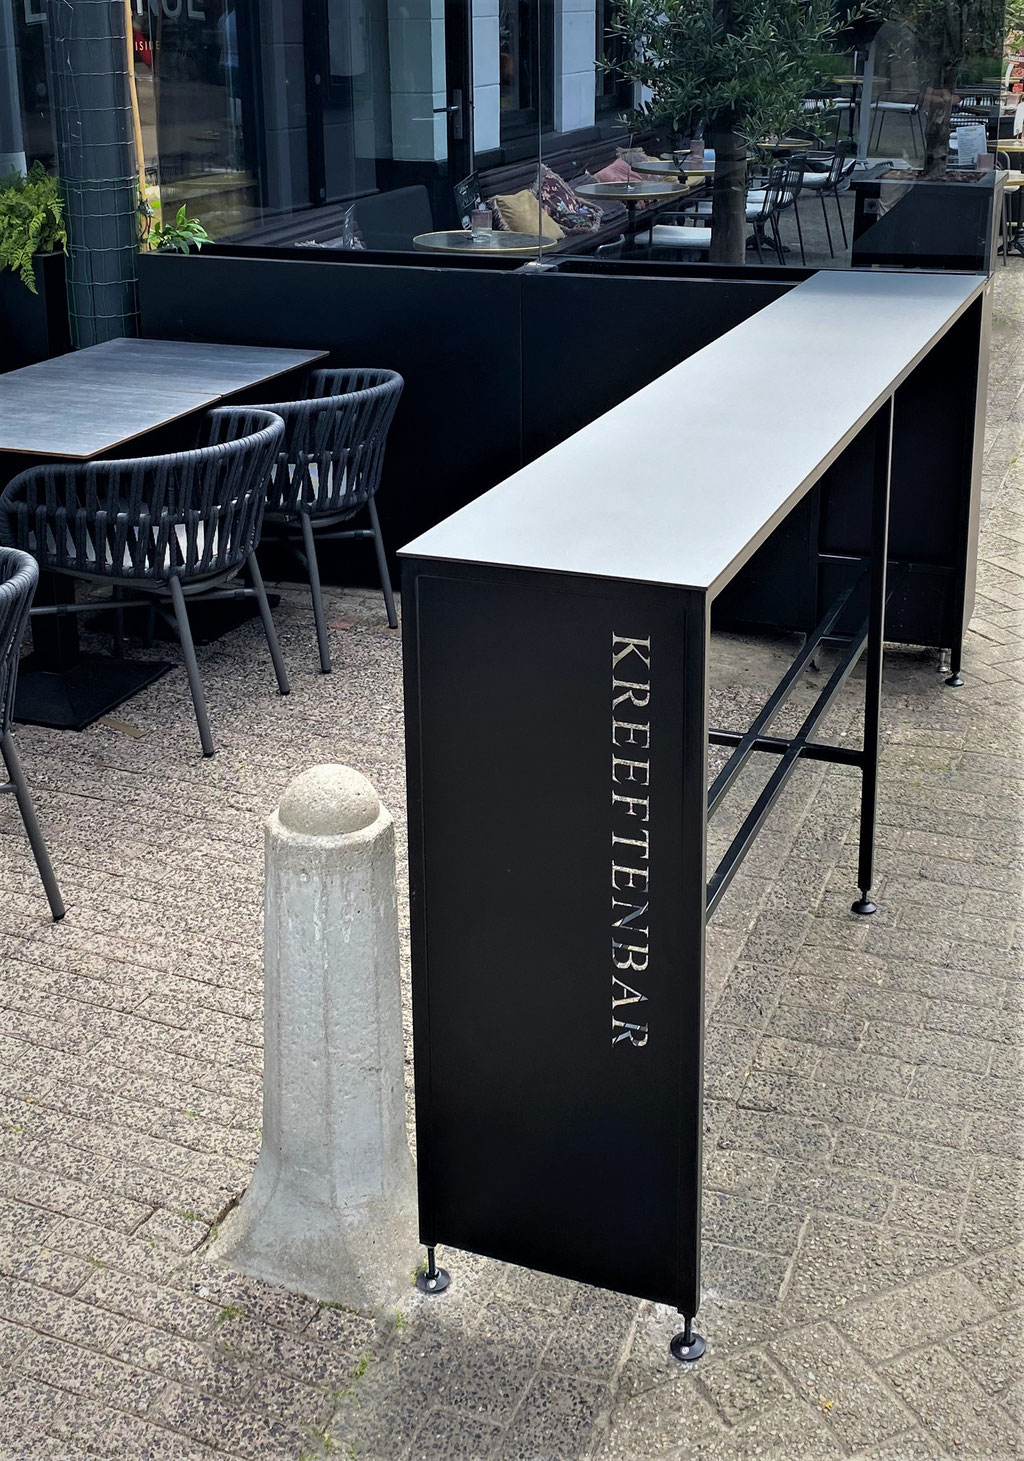 Maatwerk statafels voor Kreeftenbar Eindhoven. Met trespa blad en lasergesneden logo uit staal. Hoogte verstelbaar